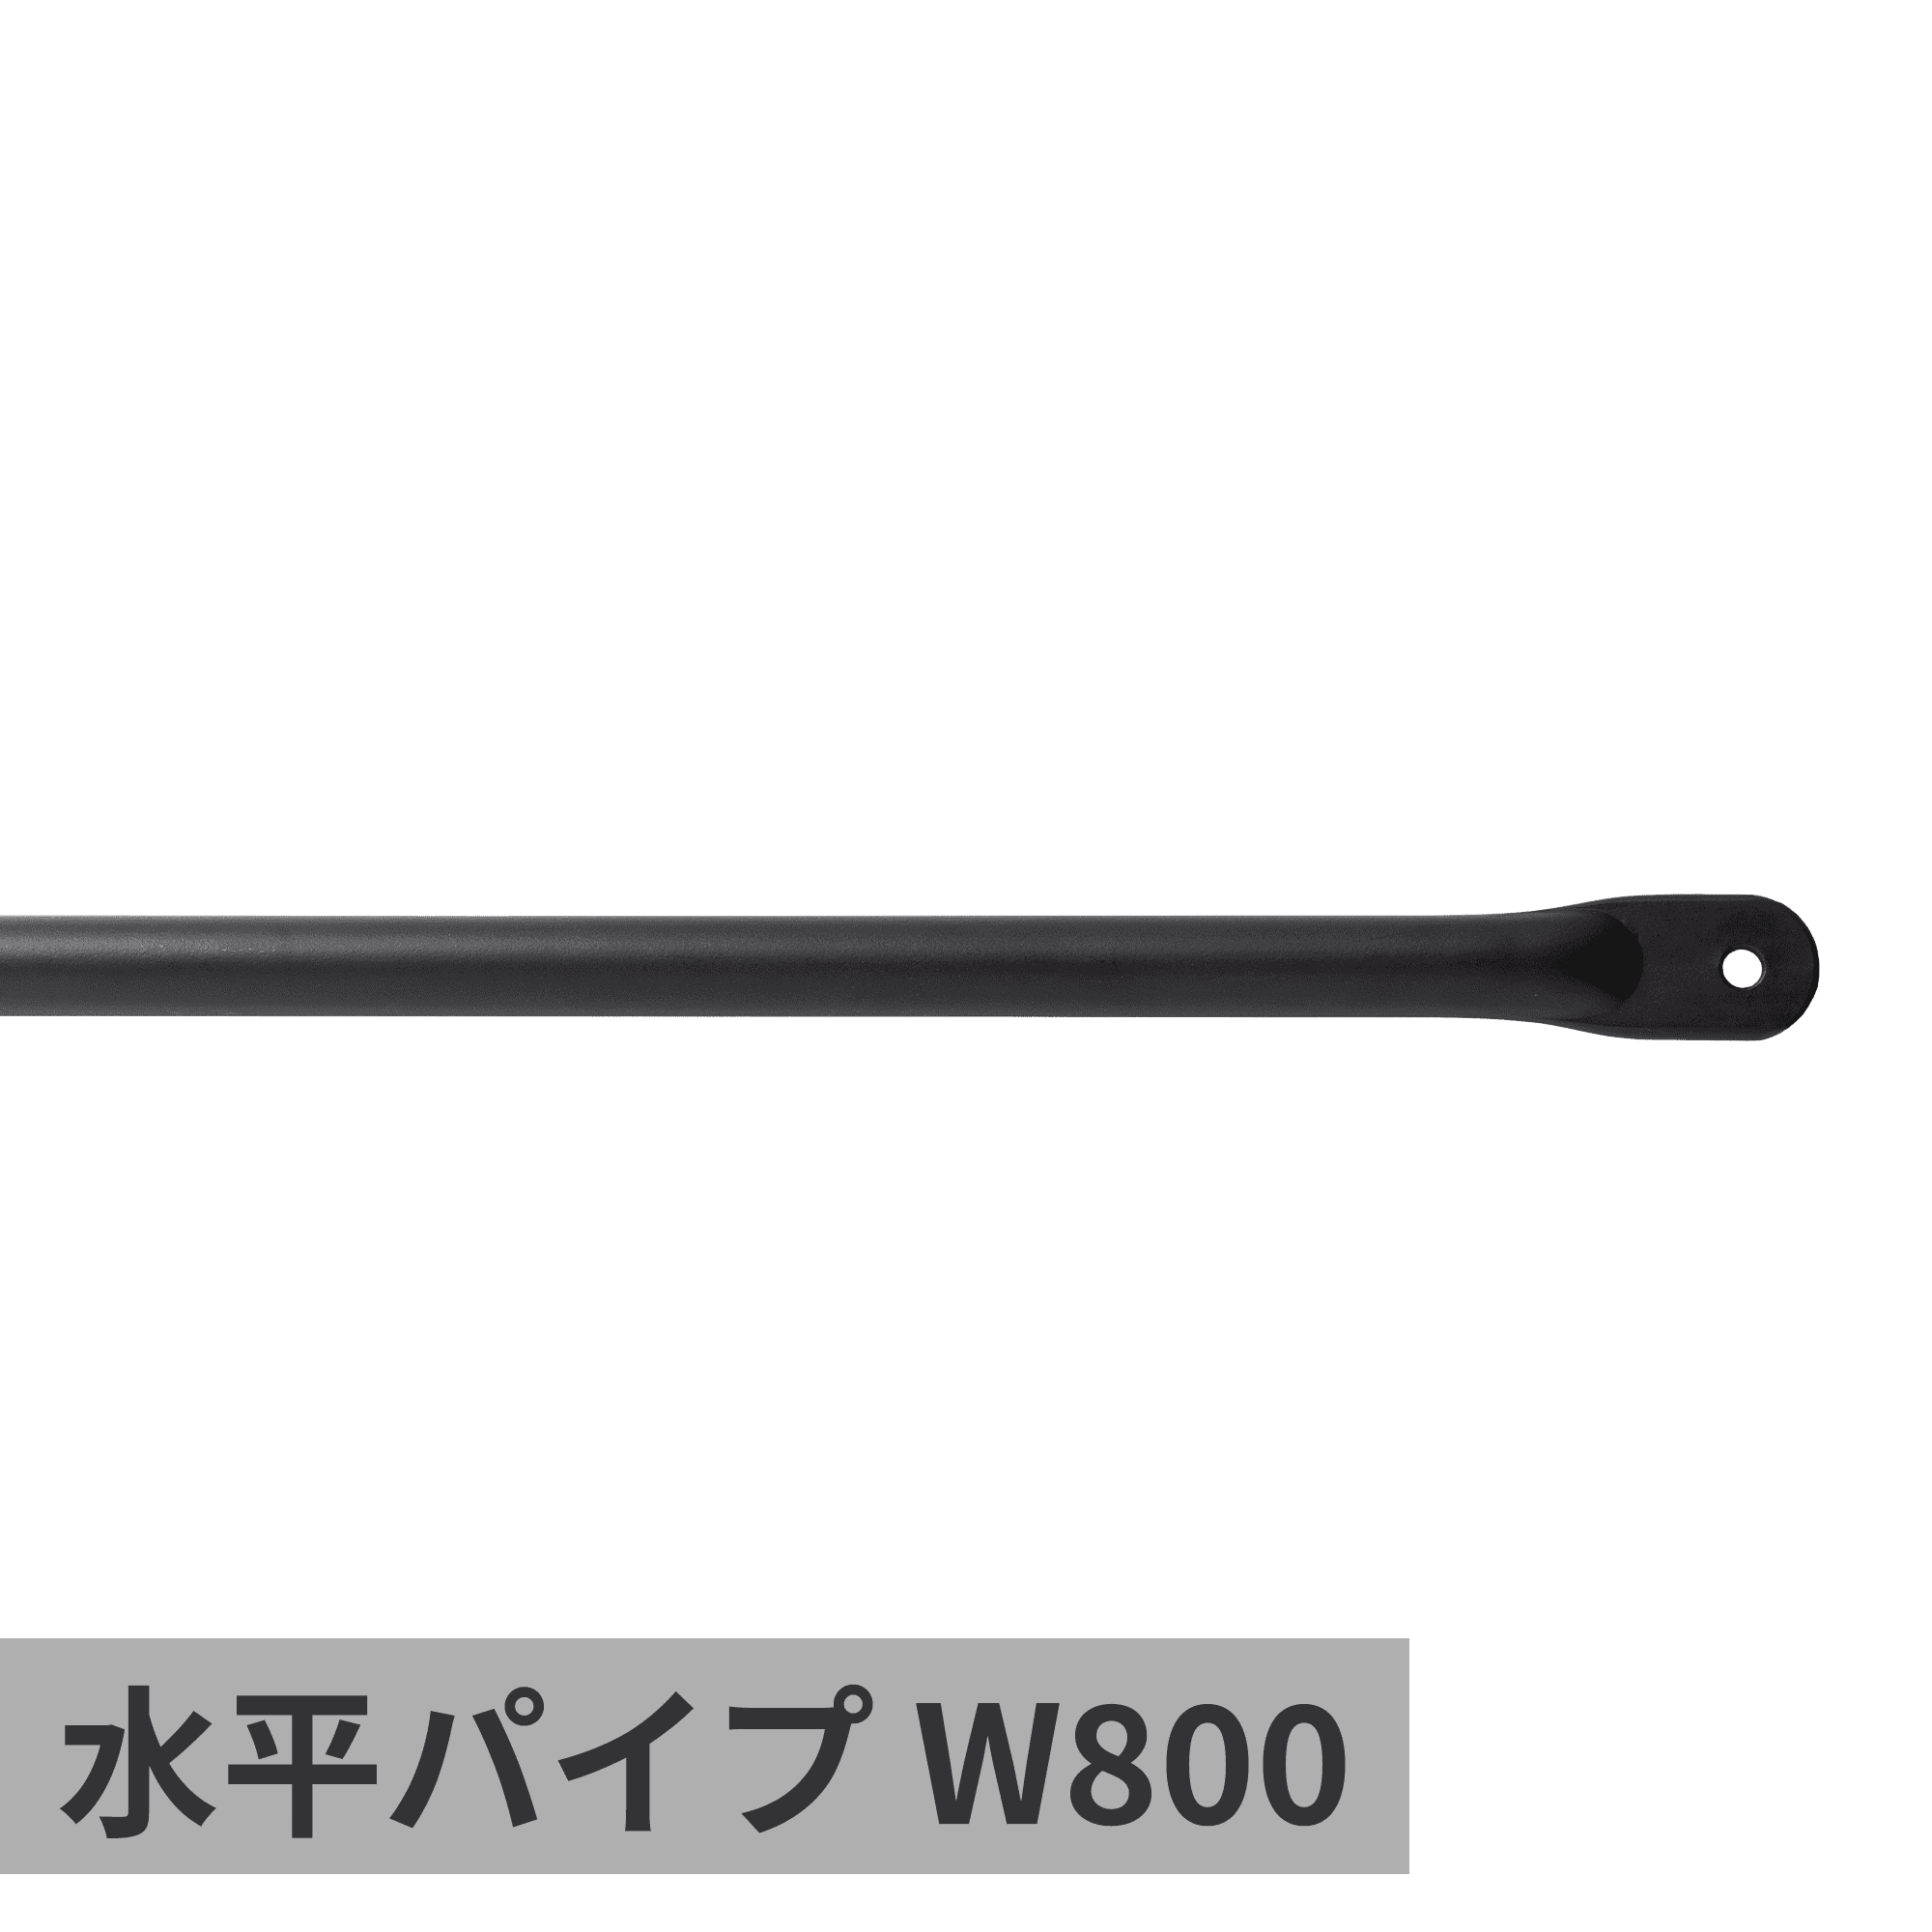 ランドリーハンガーパイプ 吊りパイプ H500 ライトグレー | PS-HB012 